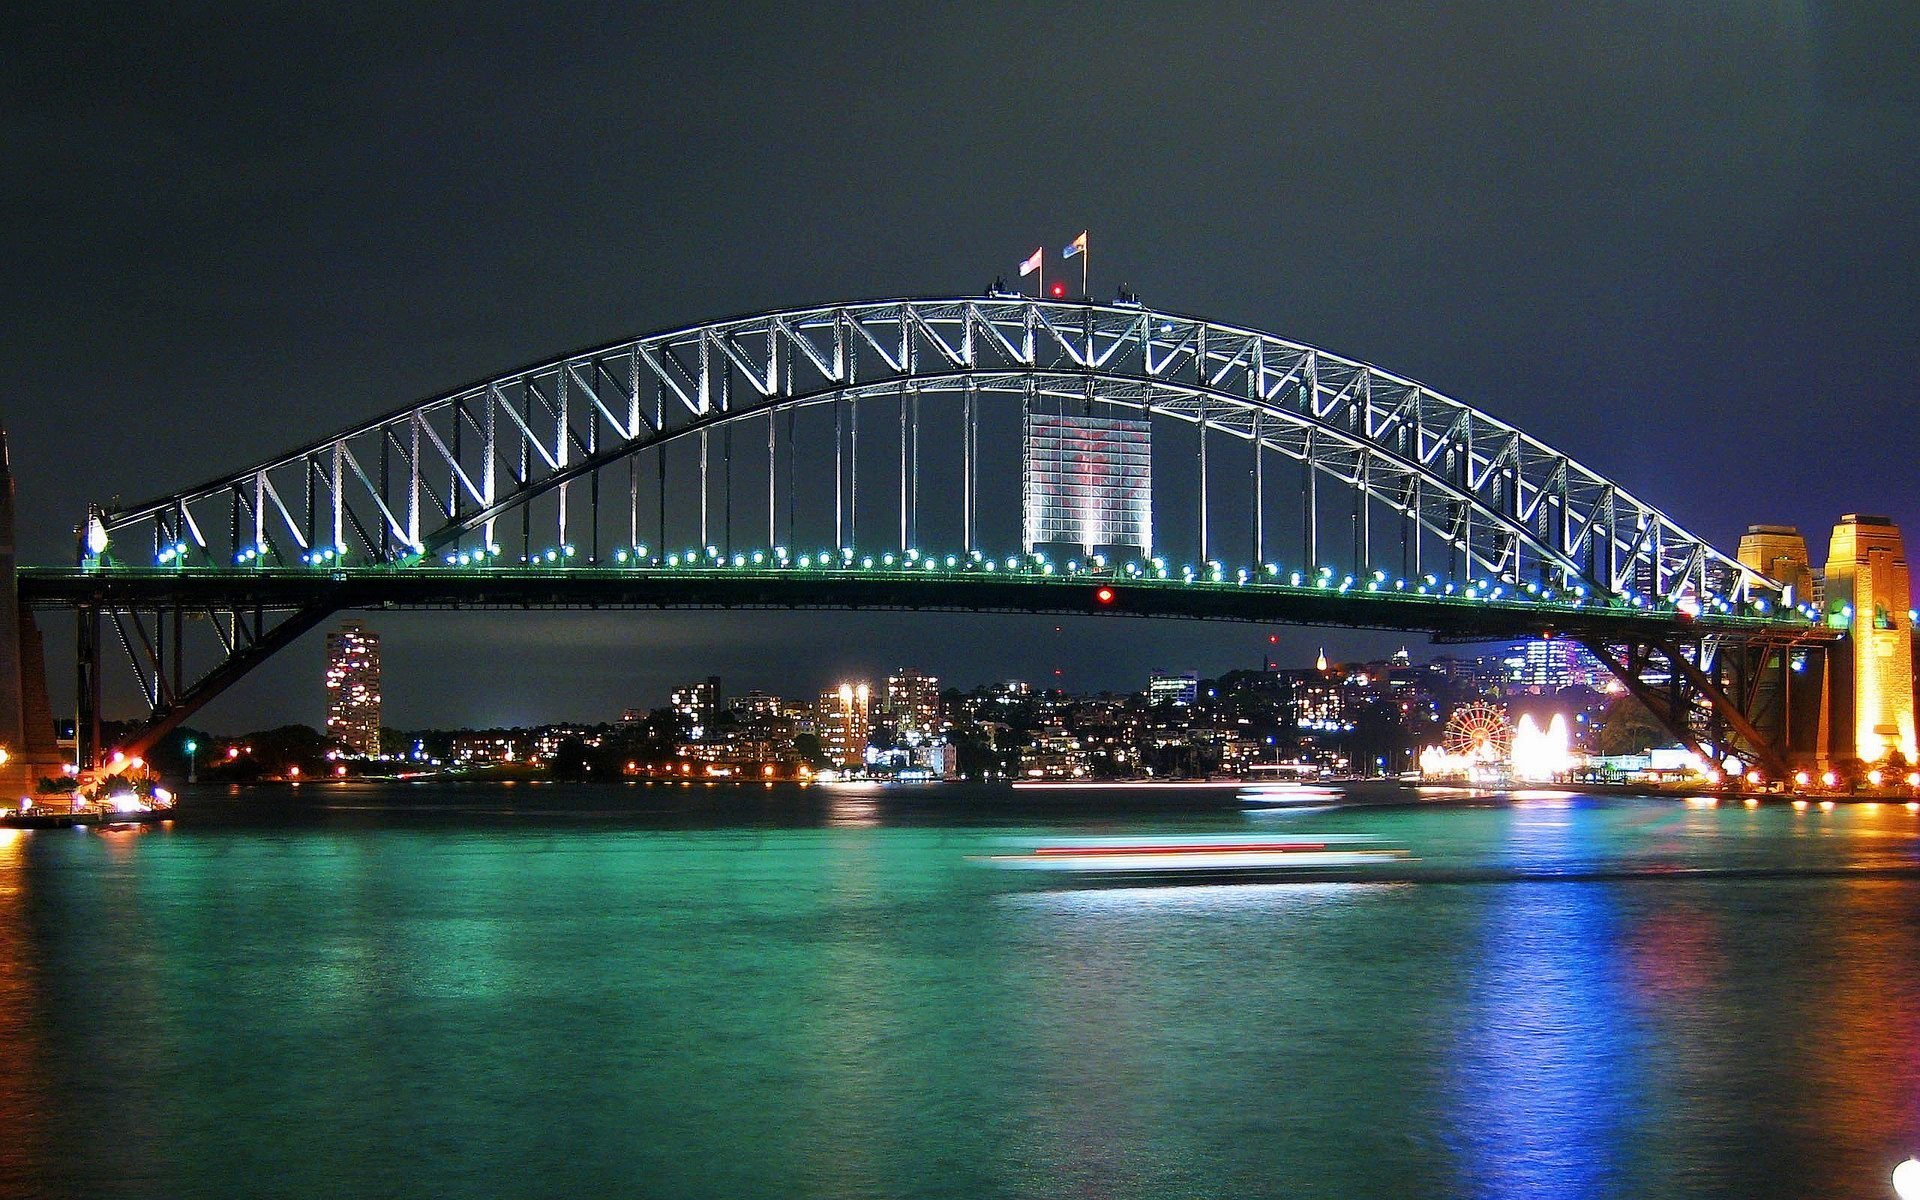 Most australians. Харбор-бридж Сидней. Сиднейский мост Харбор-бридж. Австралия.Сидней.мост Харбор-бридж. Сидней мост Харбор-бридж фото.